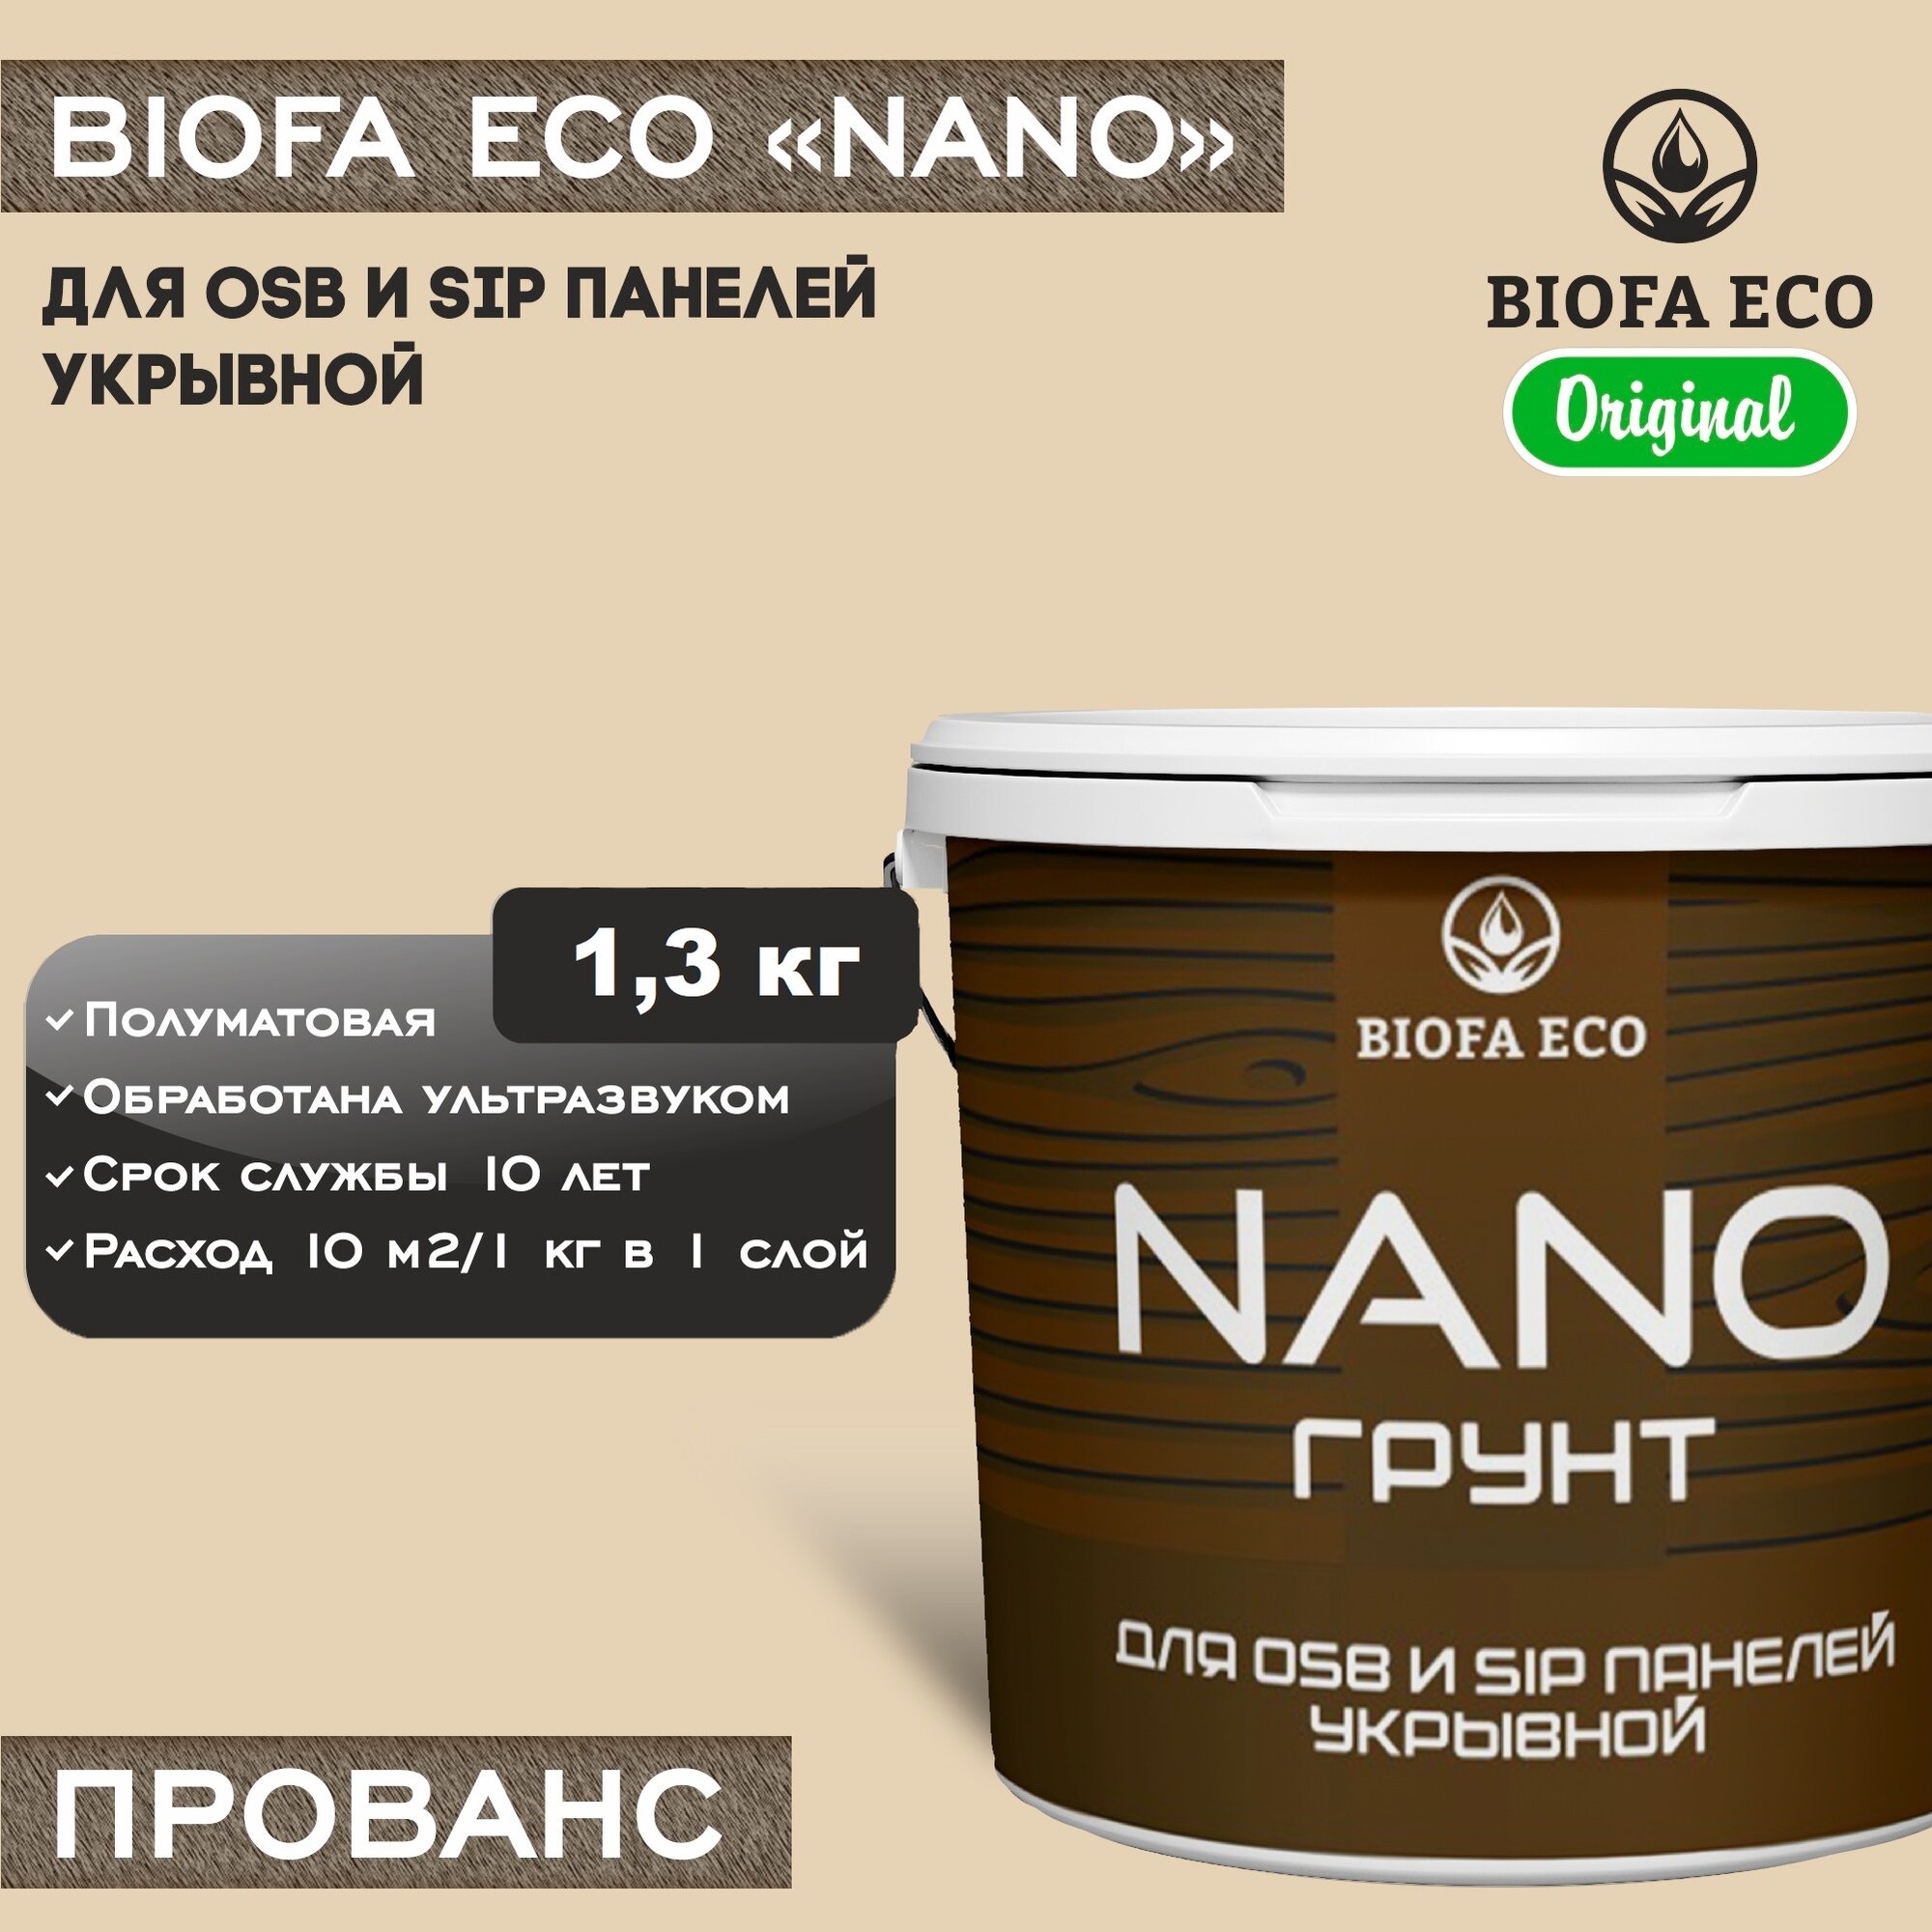 Грунт-эмаль BIOFA ECO NANO для OSB и SIP панелей, укрывной, цвет прованс, 1,3 кг